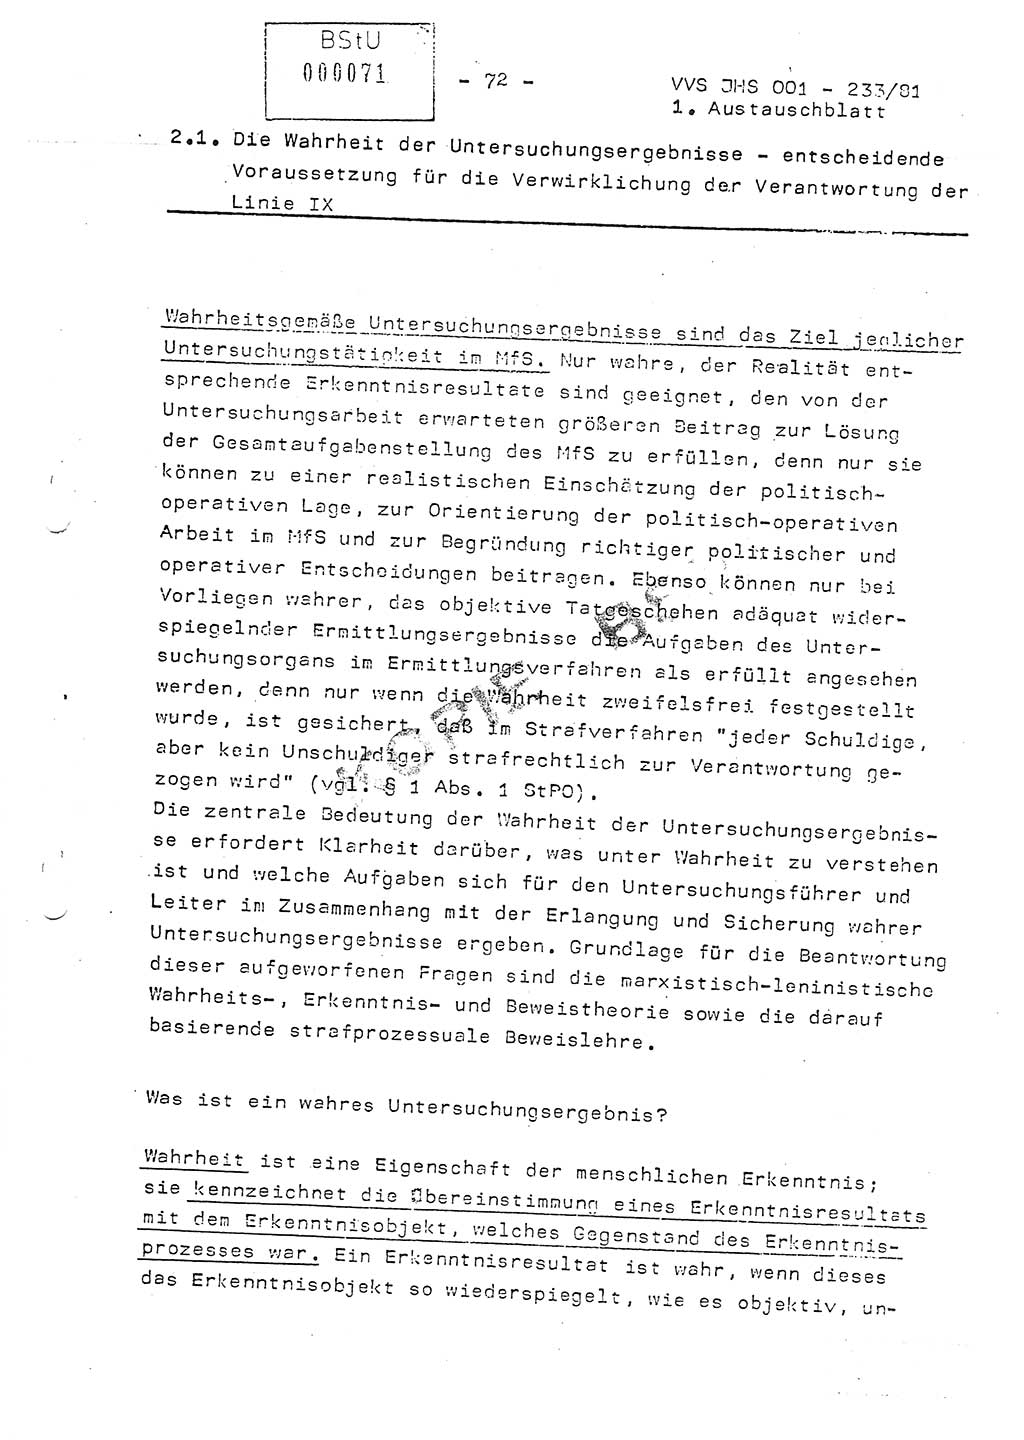 Dissertation Oberstleutnant Horst Zank (JHS), Oberstleutnant Dr. Karl-Heinz Knoblauch (JHS), Oberstleutnant Gustav-Adolf Kowalewski (HA Ⅸ), Oberstleutnant Wolfgang Plötner (HA Ⅸ), Ministerium für Staatssicherheit (MfS) [Deutsche Demokratische Republik (DDR)], Juristische Hochschule (JHS), Vertrauliche Verschlußsache (VVS) o001-233/81, Potsdam 1981, Blatt 72 (Diss. MfS DDR JHS VVS o001-233/81 1981, Bl. 72)